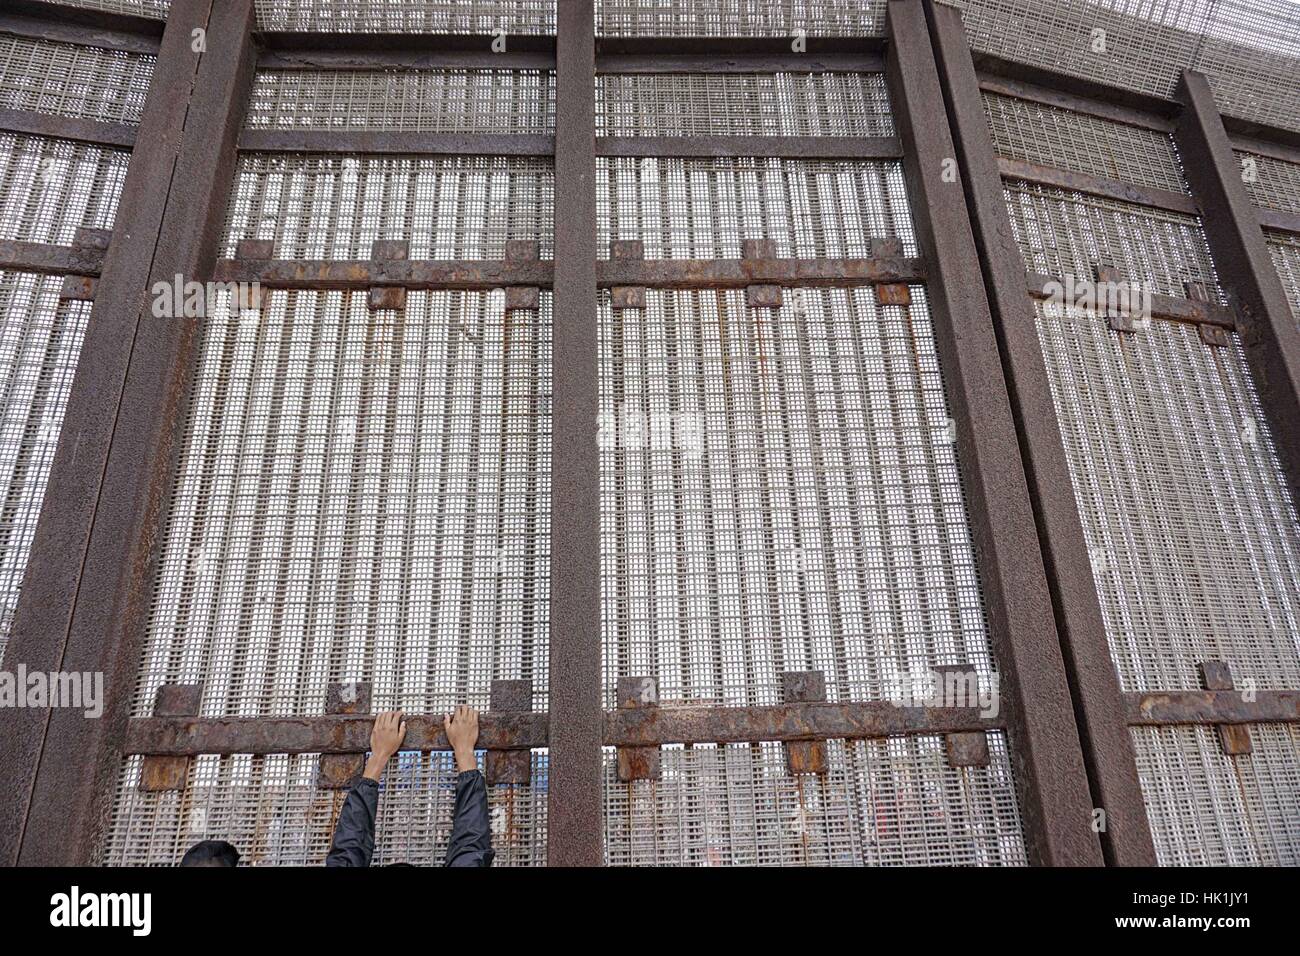 San Ysidro, Stati Uniti d'America. 25 gennaio, 2107. **Foto File** Presidente Trump firmato degli ordini esecutivi per iniziare la costruzione di un muro in US-frontiera messico, potenziare la Pattuglia di Confine forze e aumentando il numero dell'immigrazione i funzionari di polizia incaricati di effettuare le deportazioni. Nella foto: 29 Maggio 2016 - San Ysidro, California, Stati Uniti - Una nazionale messicana sorge lungo gli Stati Uniti-Messico muro di confine. Credito: ZUMA Press, Inc./Alamy Live News Foto Stock